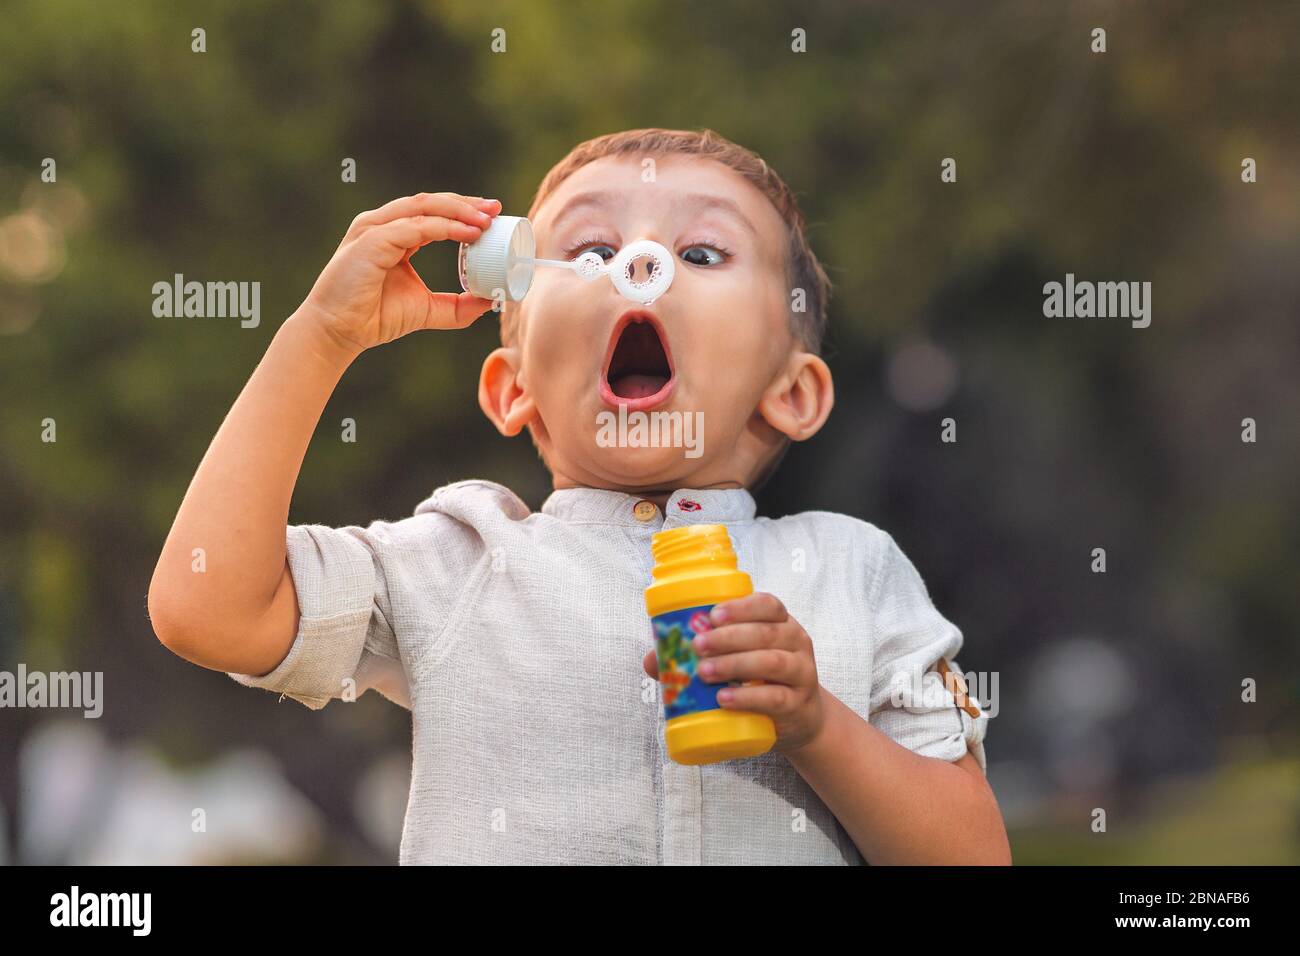 Un enfant à la bouche ouverte et aux yeux larges souffle des bulles de savon colorées dans la nature. Banque D'Images